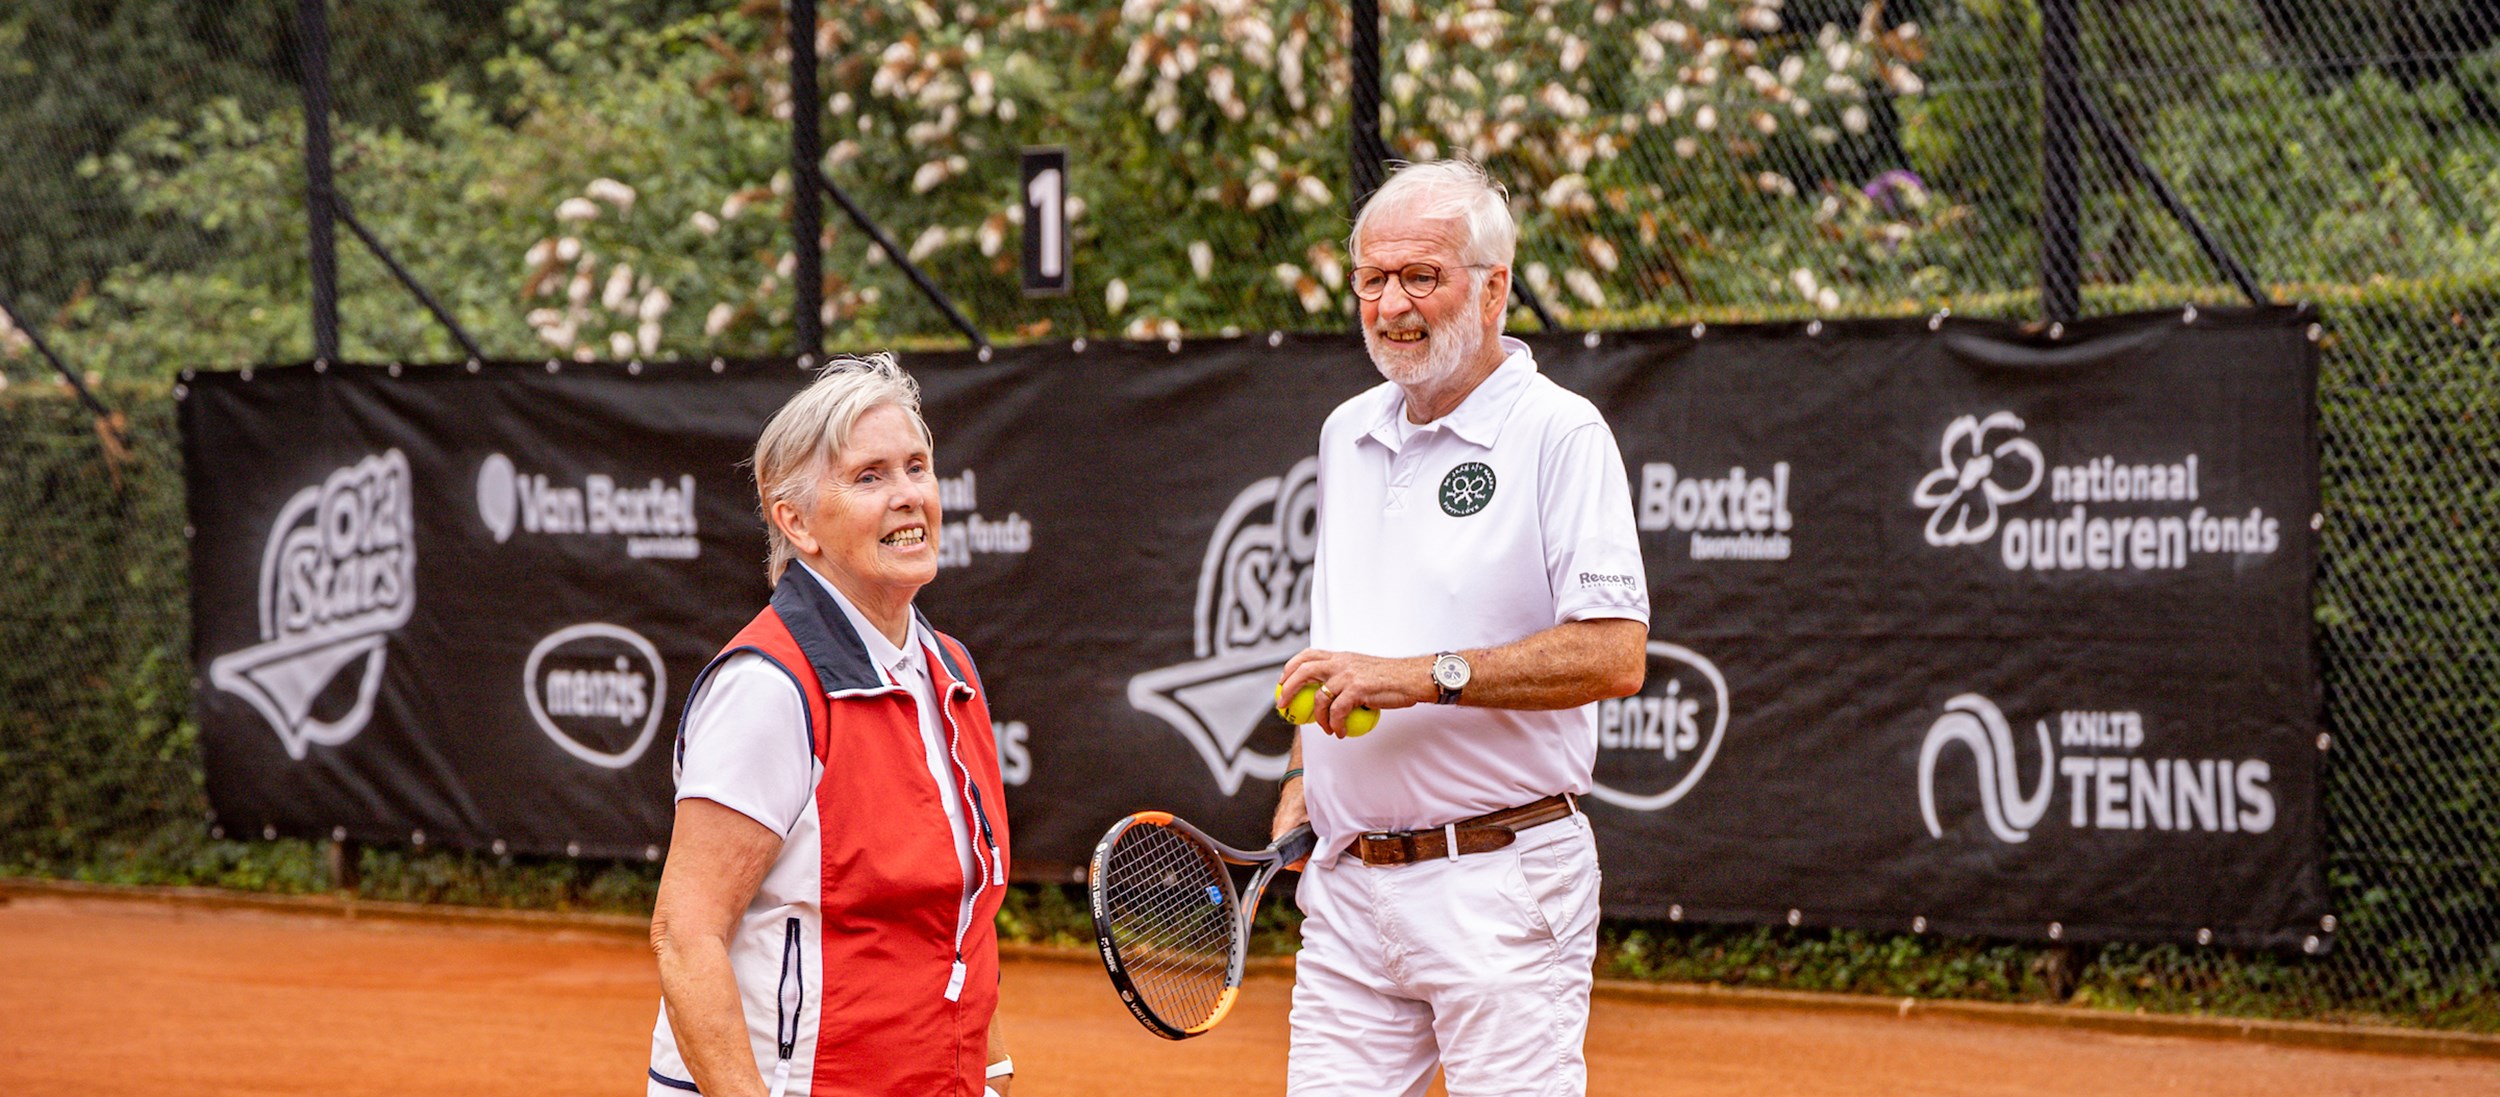 Zoeken Gemarkeerd In tegenspraak OldStars Tennis: Complete work-out én tennis in één